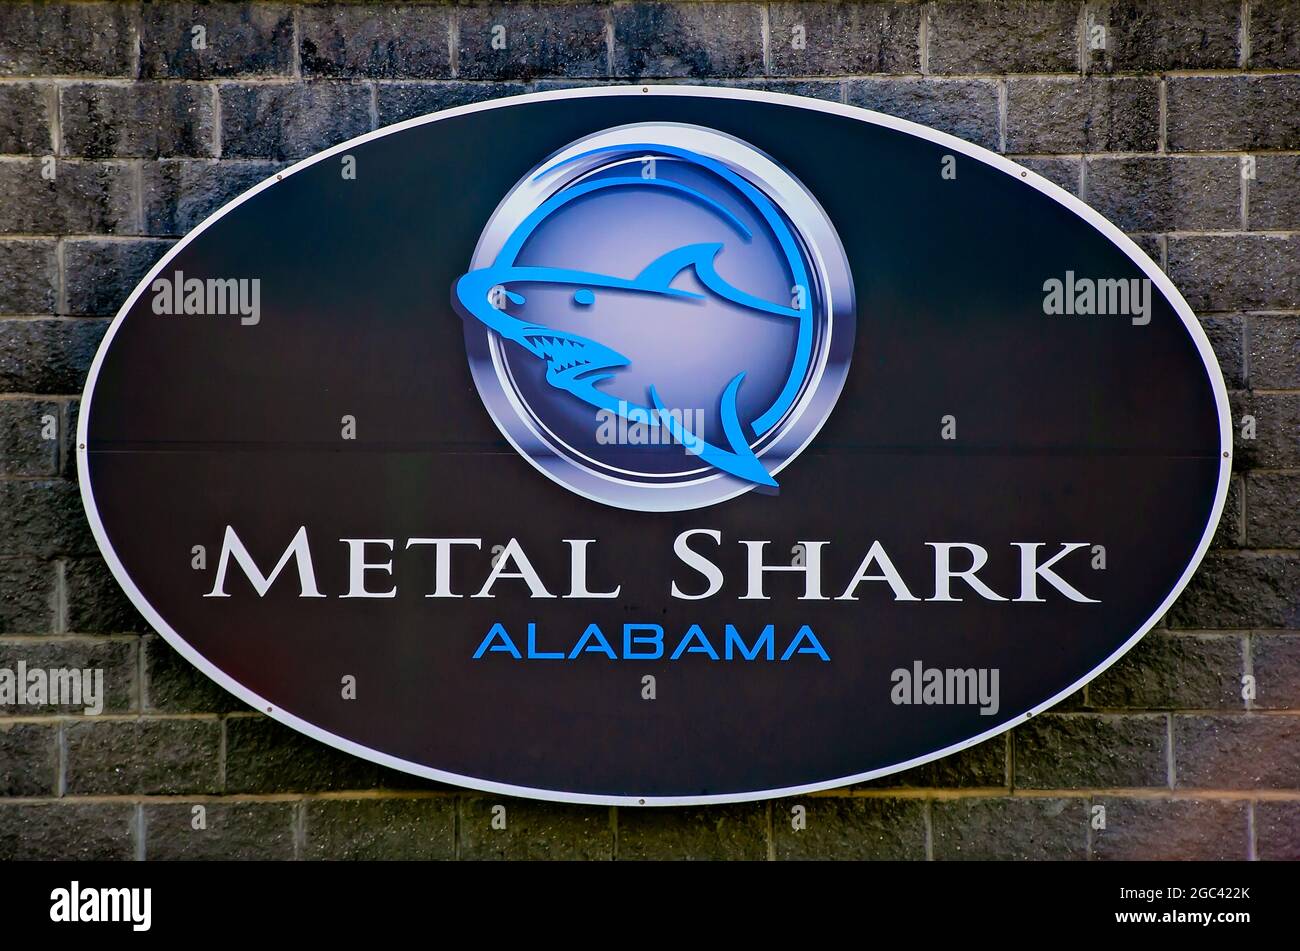 La compagnie de construction navale de Metal Shark est photographiée, le 13 juillet 2021, à Bayou la Batre, Alabama. La société se spécialise dans la conception et la production de bateaux. Banque D'Images